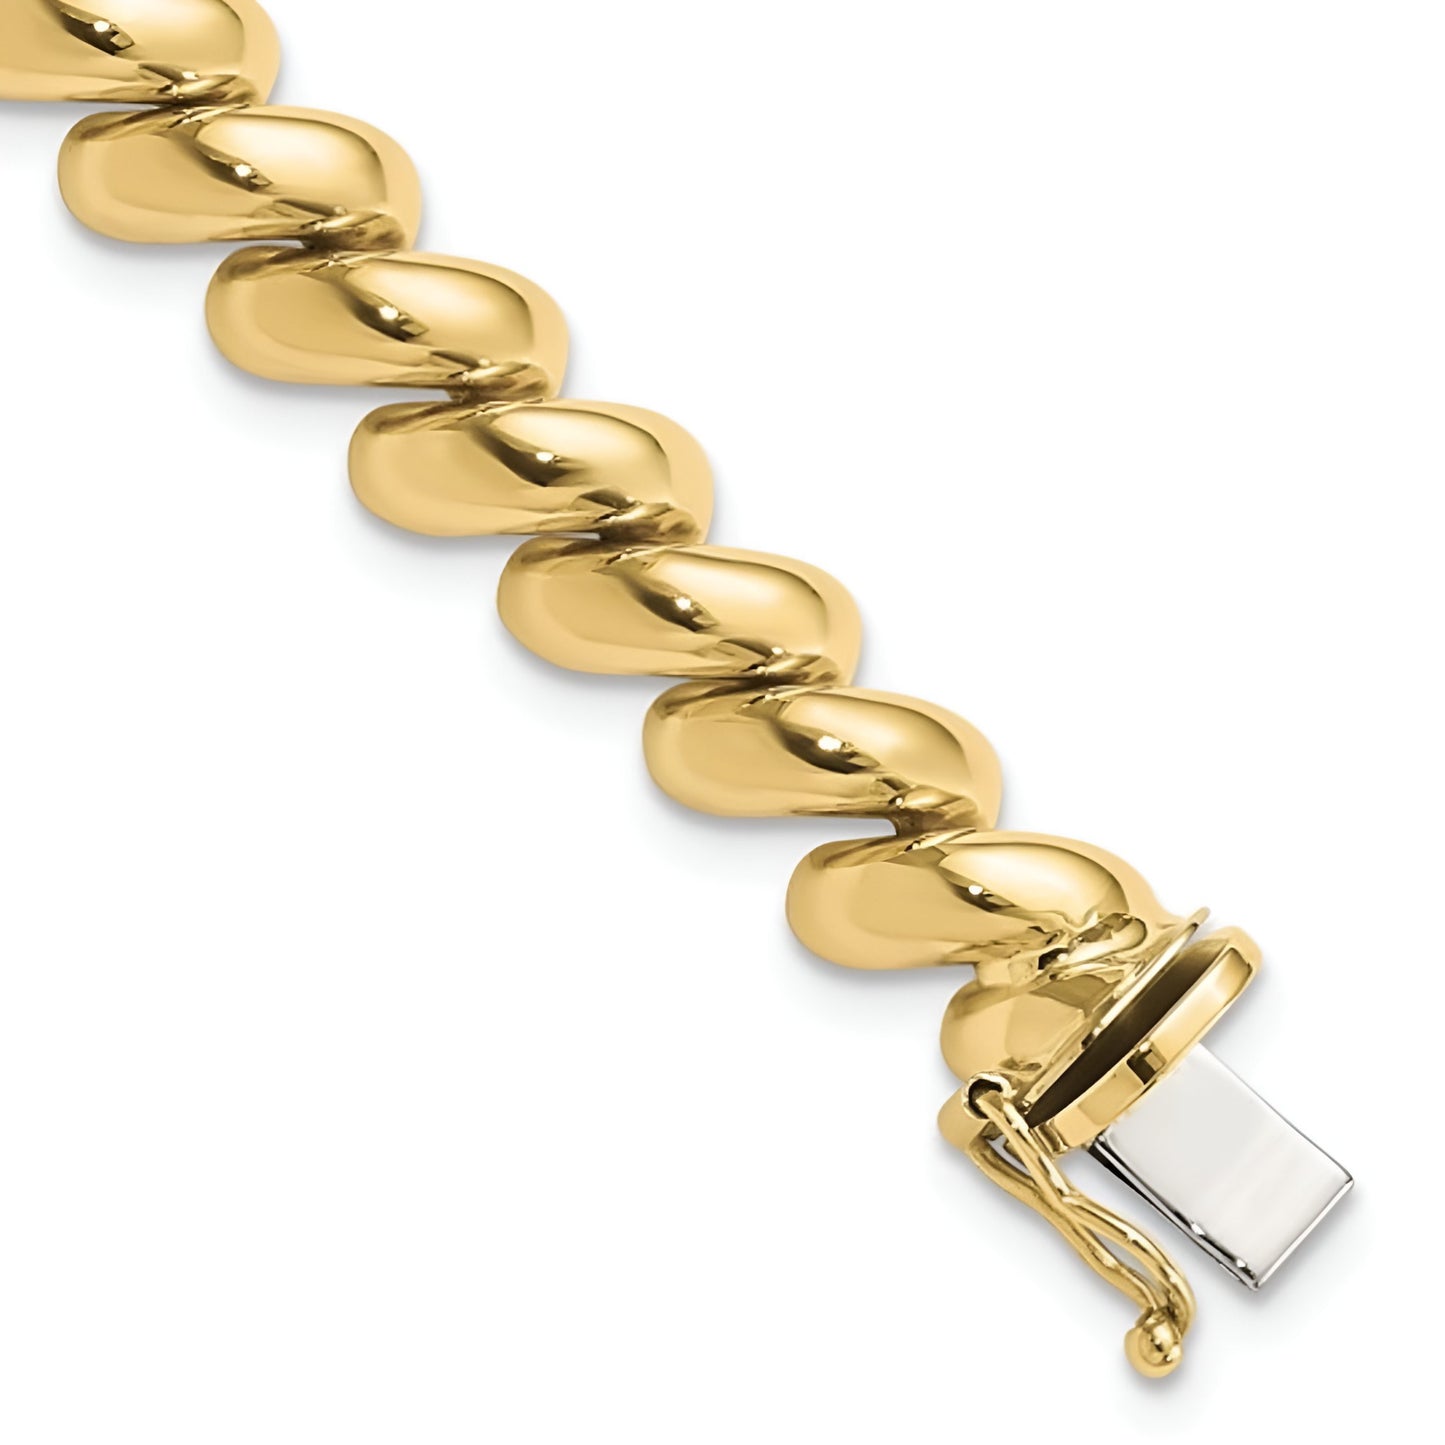 San Marco Bracelet